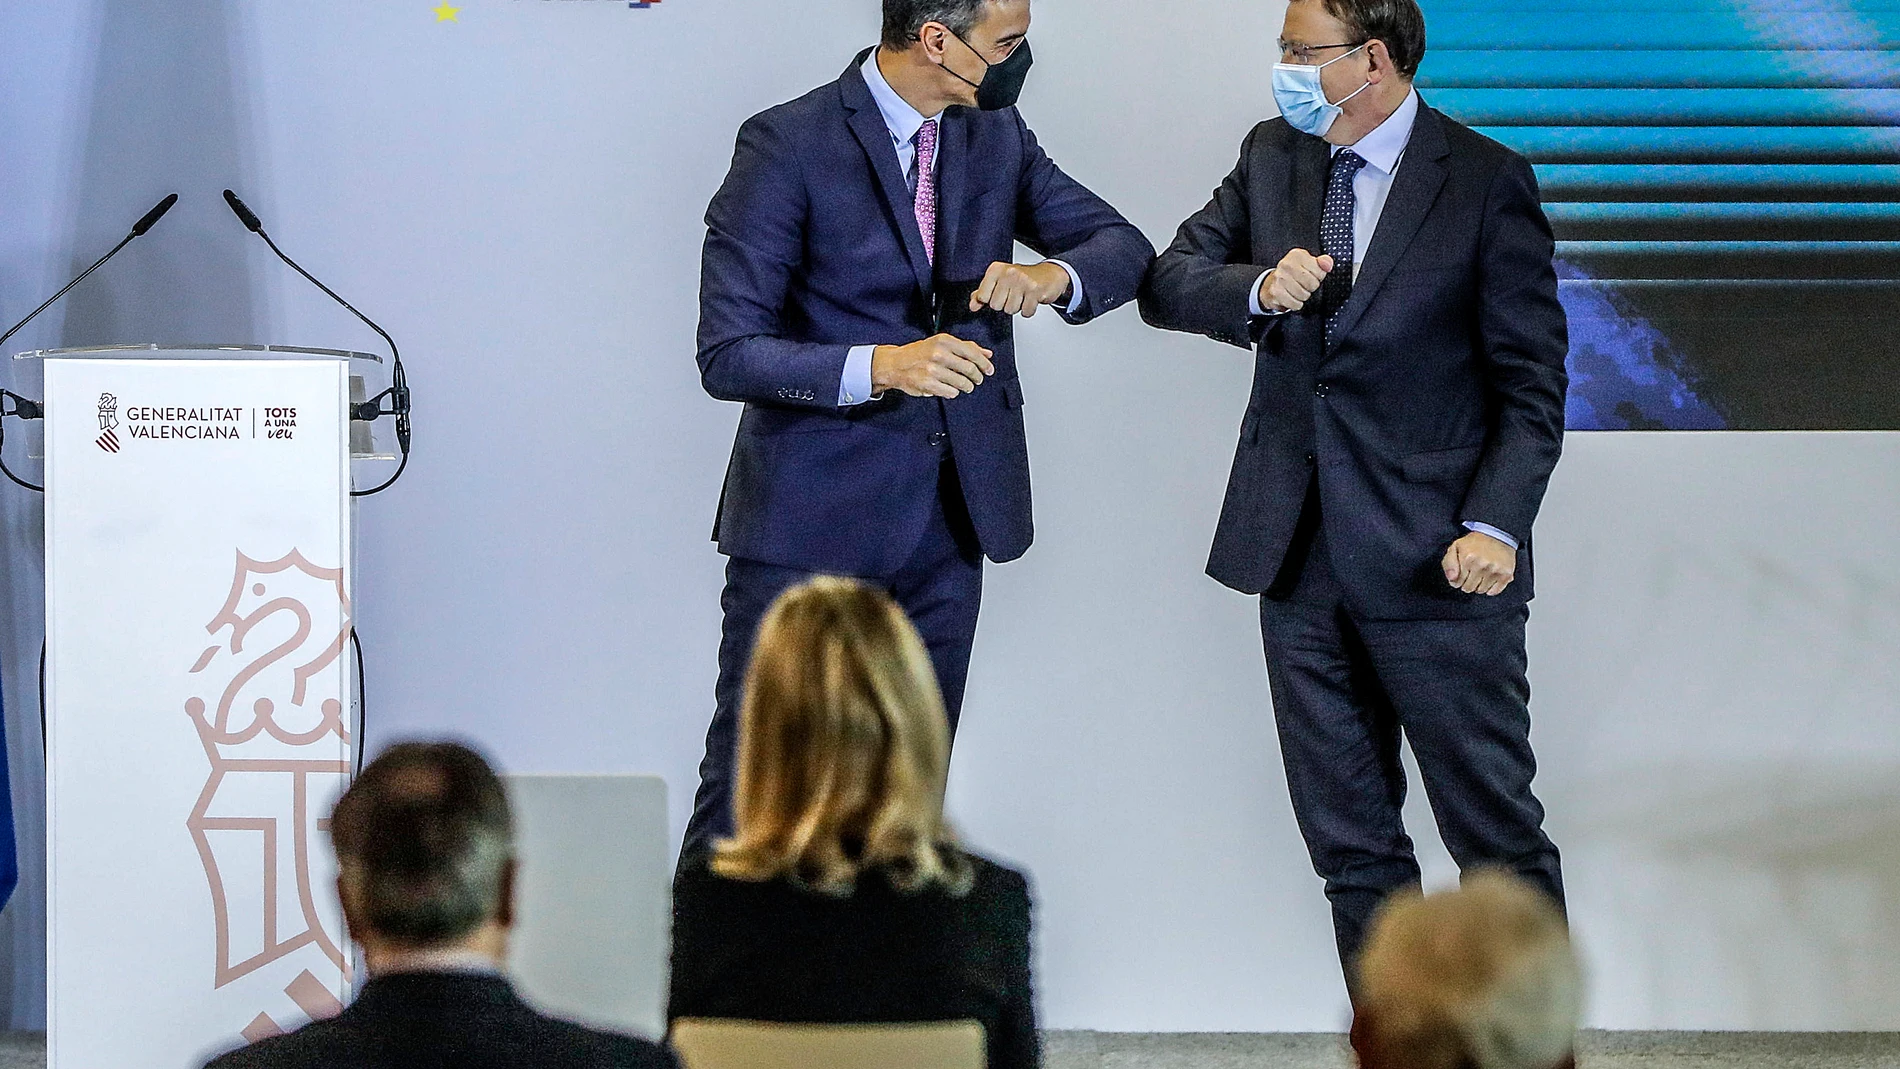 El presidente de la Generalitat, Ximo Puig, saluda con el codo al presidente del Gobierno, Pedro Sánchez